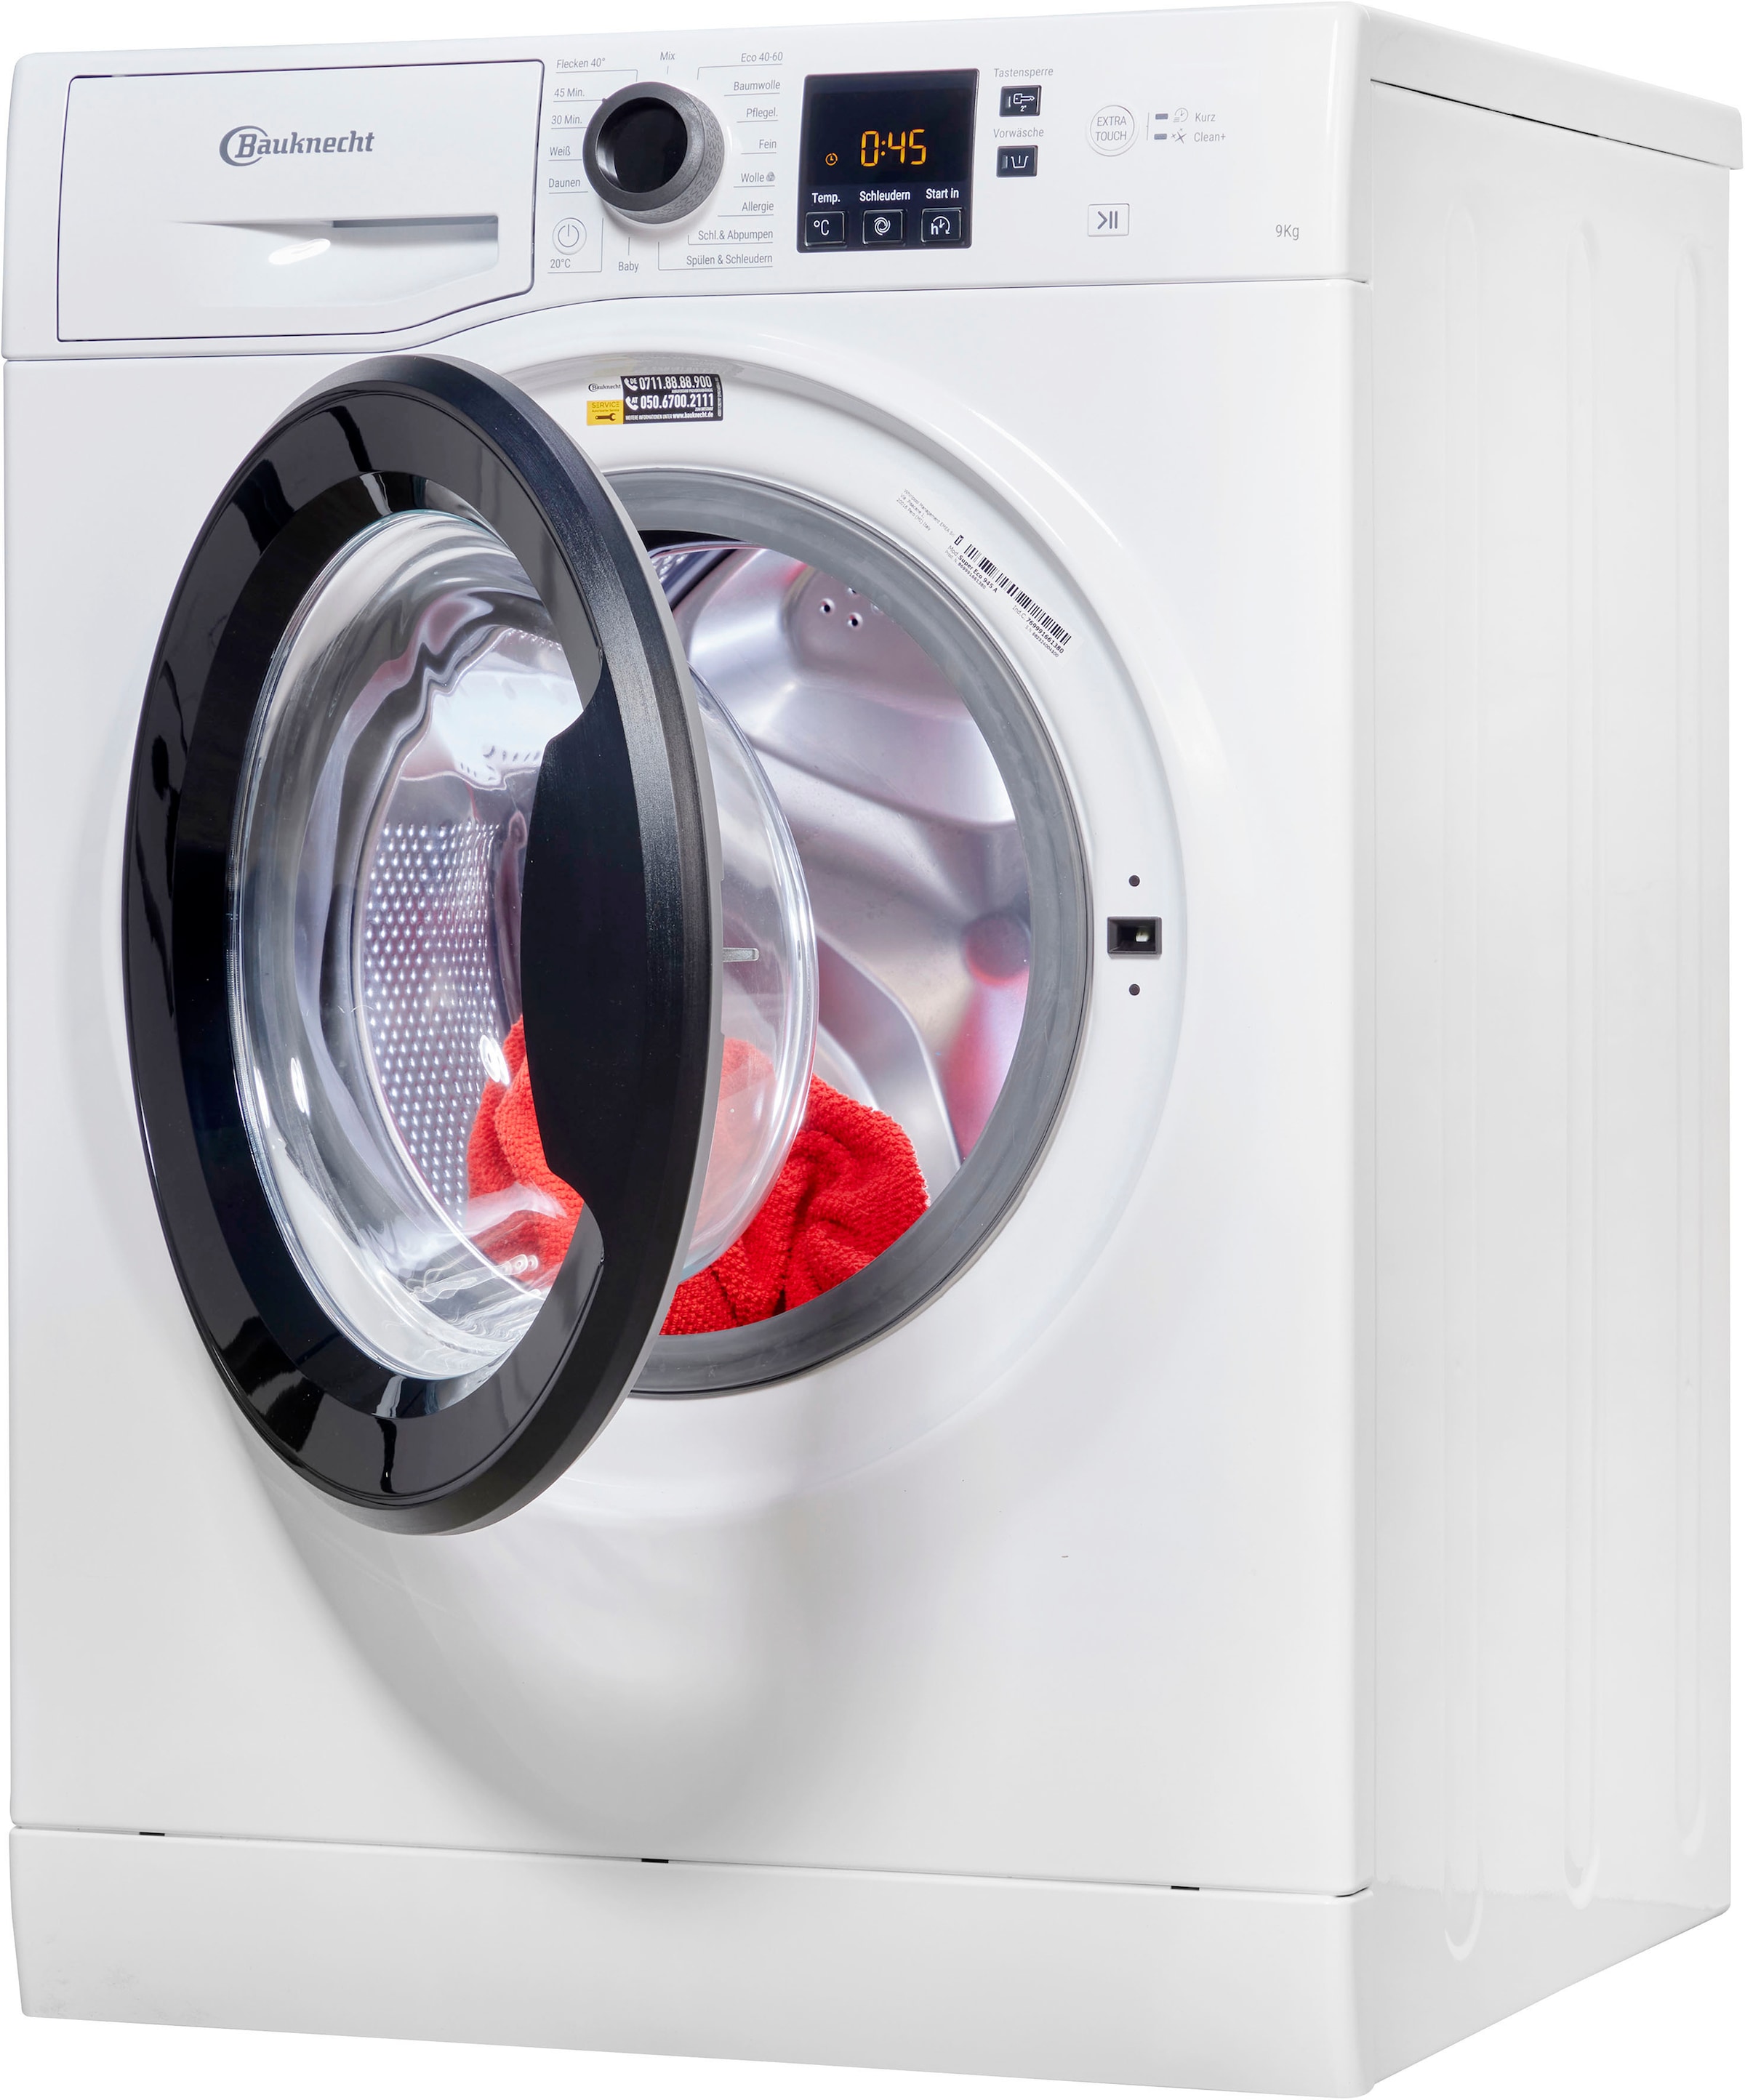 BAUKNECHT Waschmaschine, Super Eco 945 A, 9 kg, 1400 U/min, 4 Jahre  Herstellergarantie mit 3 Jahren XXL Garantie